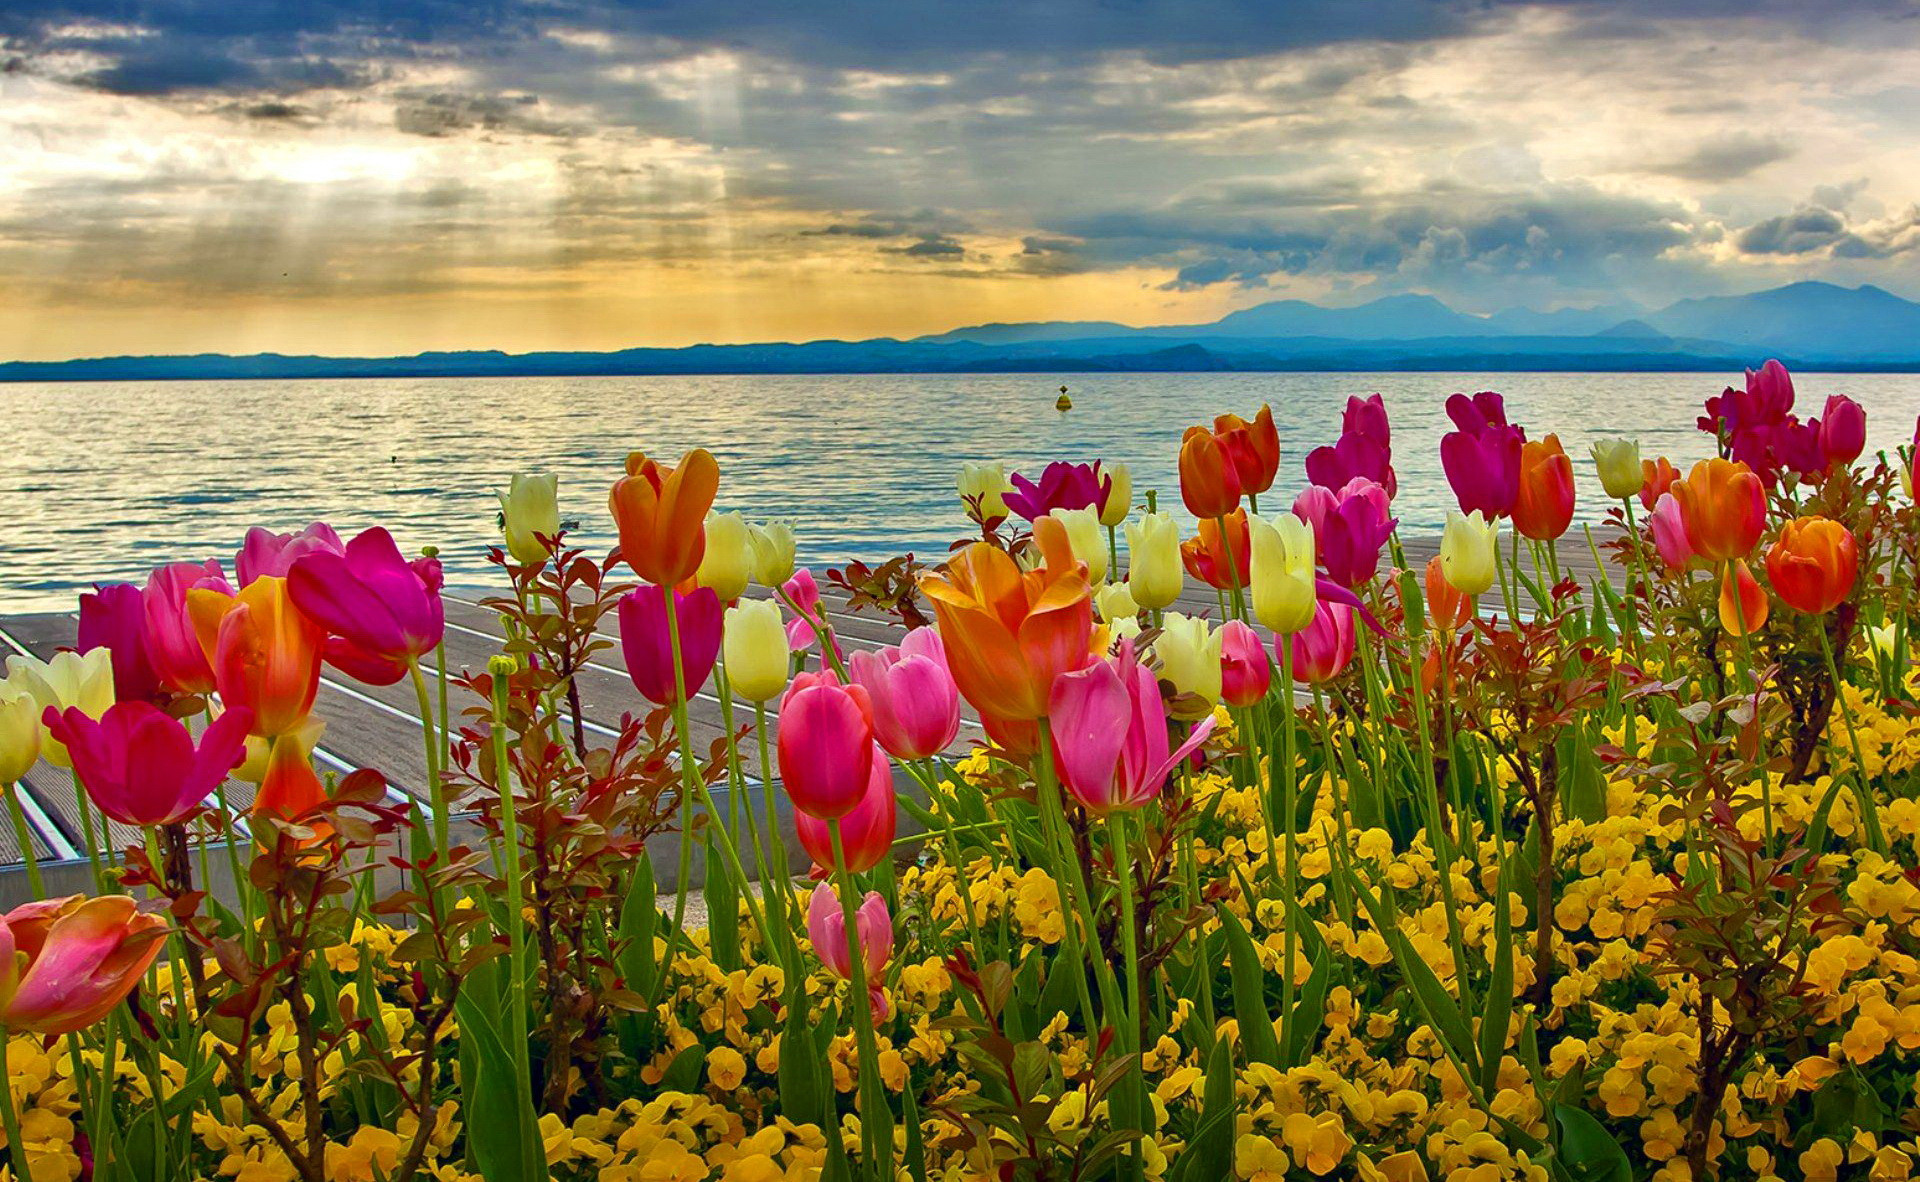 Mùa xuân đang đến gần và một tấm hình nền tươi sáng cũng đang chờ đợi bạn. Với các bức ảnh về hoa tươi và thiên nhiên hùng vĩ, bạn sẽ không thể sai lầm khi chọn lựa những hình nền đẹp nhất về mùa xuân. Hãy khám phá những hình nền độc đáo nhất trong bài viết này.